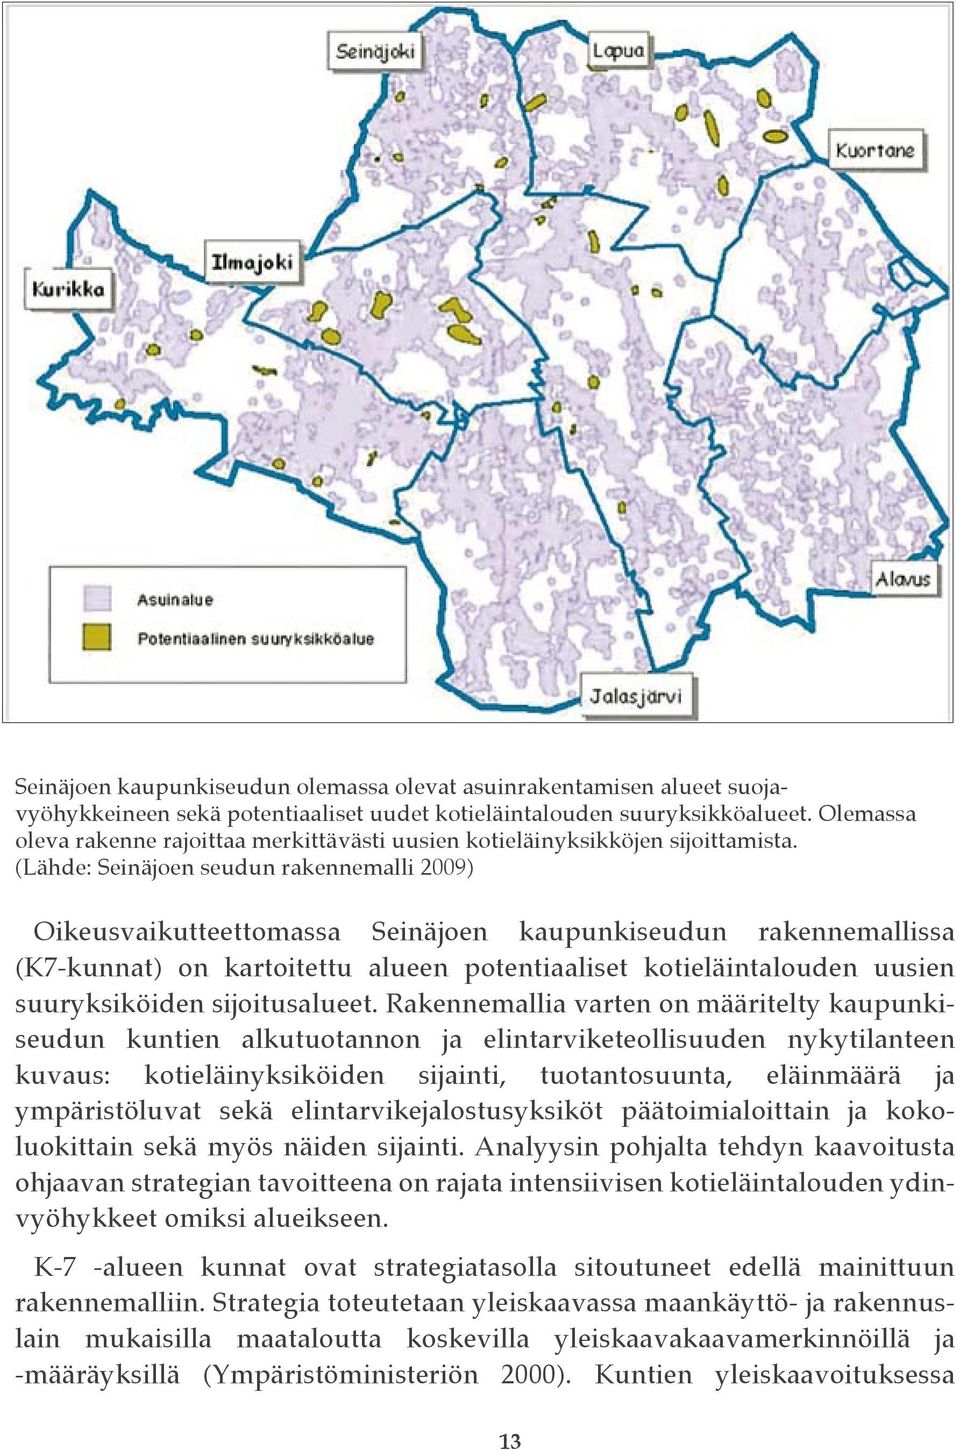 (Lähde: Seinäjoen seudun rakennemalli 2009) Oikeusvaikutteettomassa Seinäjoen kaupunkiseudun rakennemallissa (K7-kunnat) on kartoitettu alueen potentiaaliset kotieläintalouden uusien suuryksiköiden